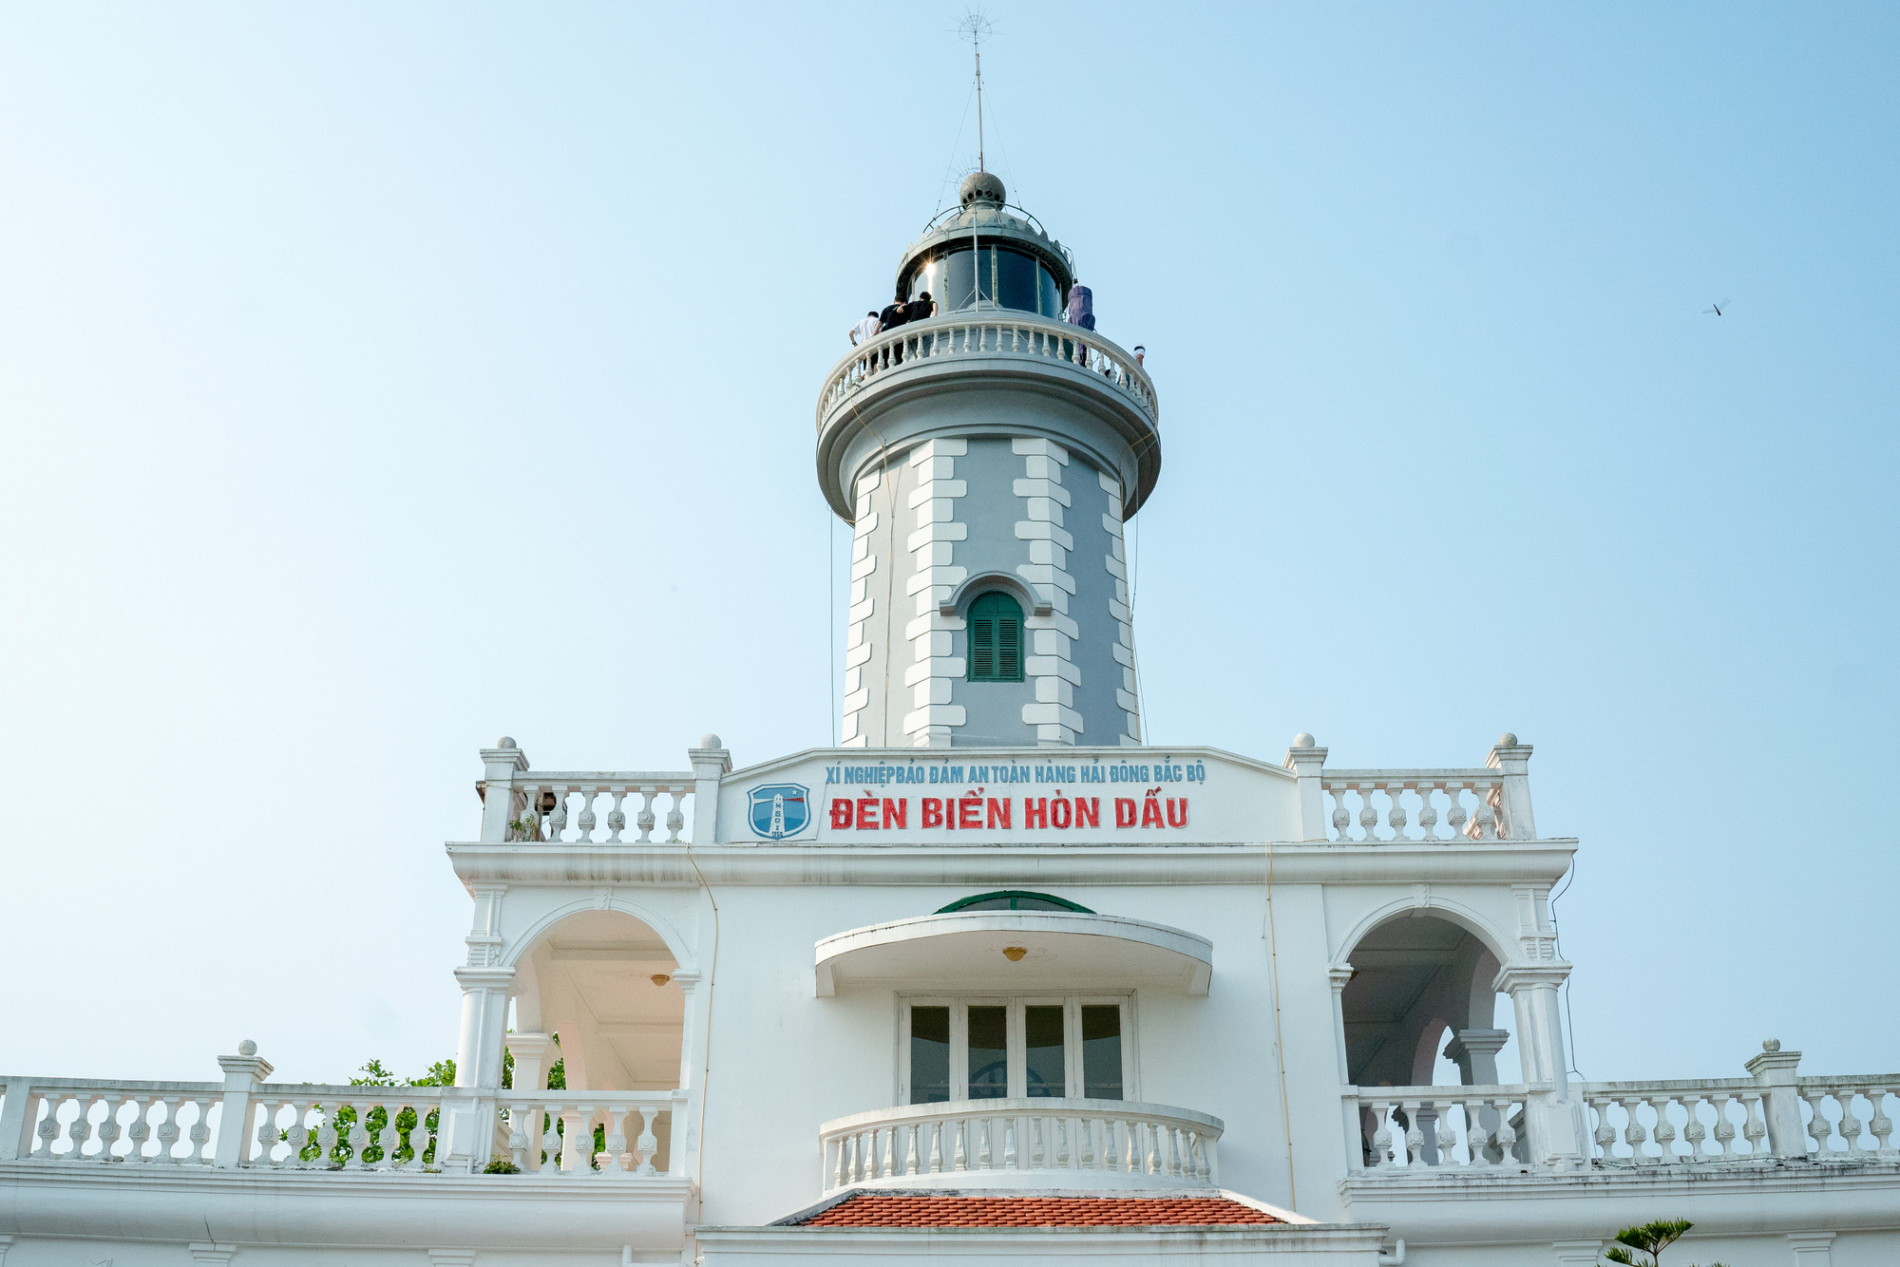 Khám phá đảo bé hạt tiêu có hải đăng cổ nhất Việt Nam, 124 năm vững vàng trước sóng gió - Ảnh 5.